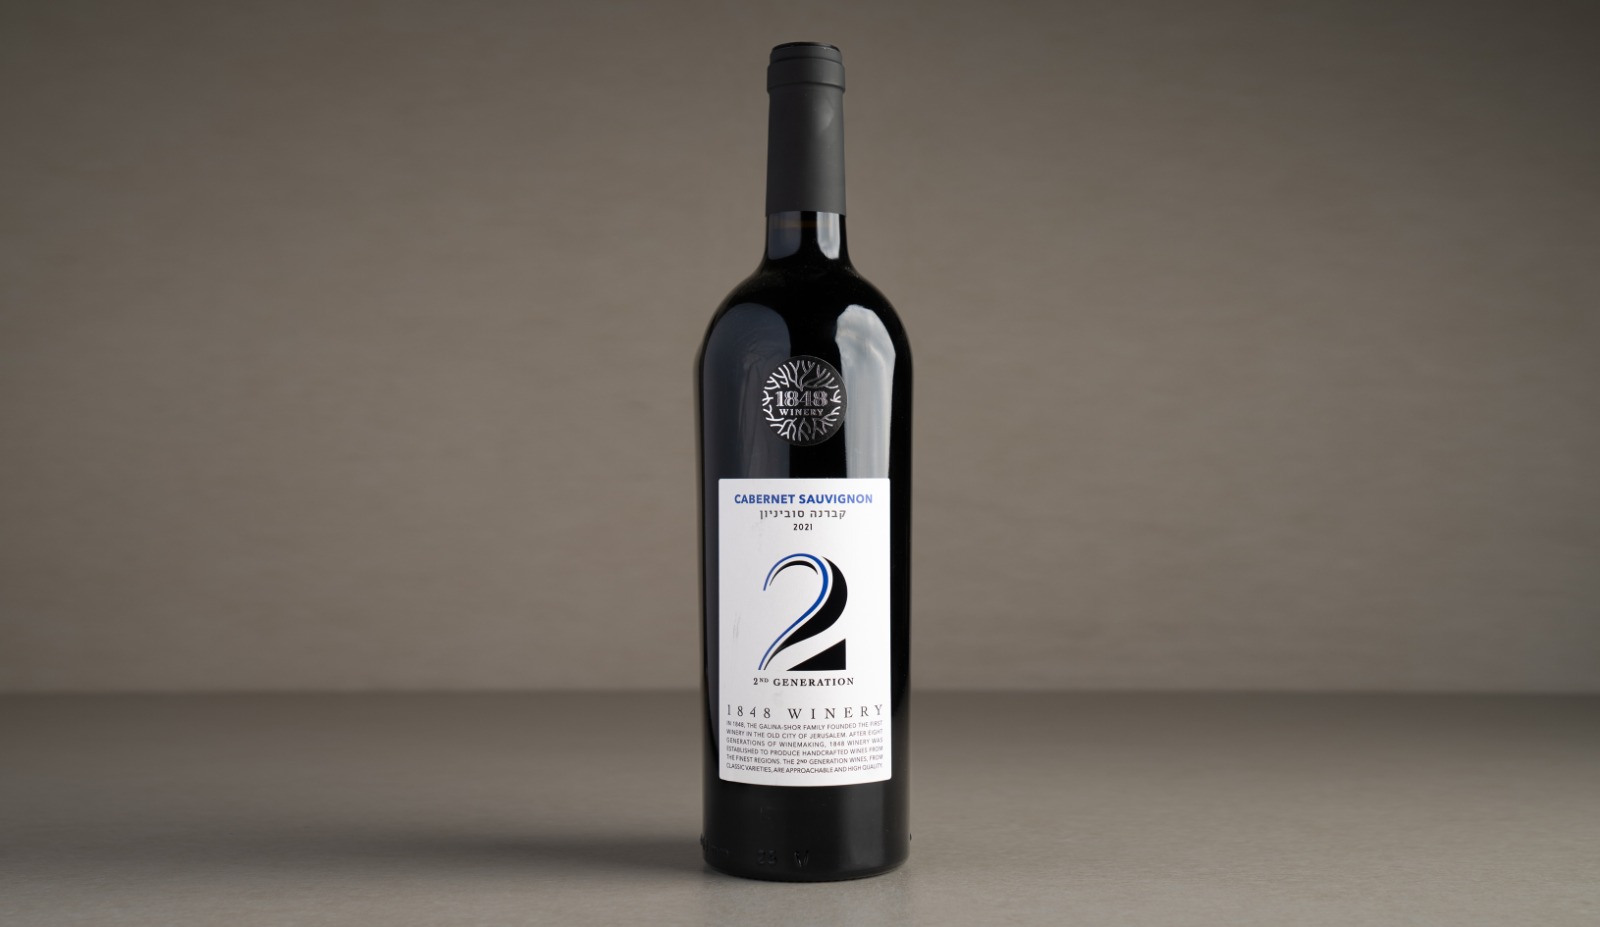 יין אדום יבש "1848" דור 2 קברנה סוביניון 2021